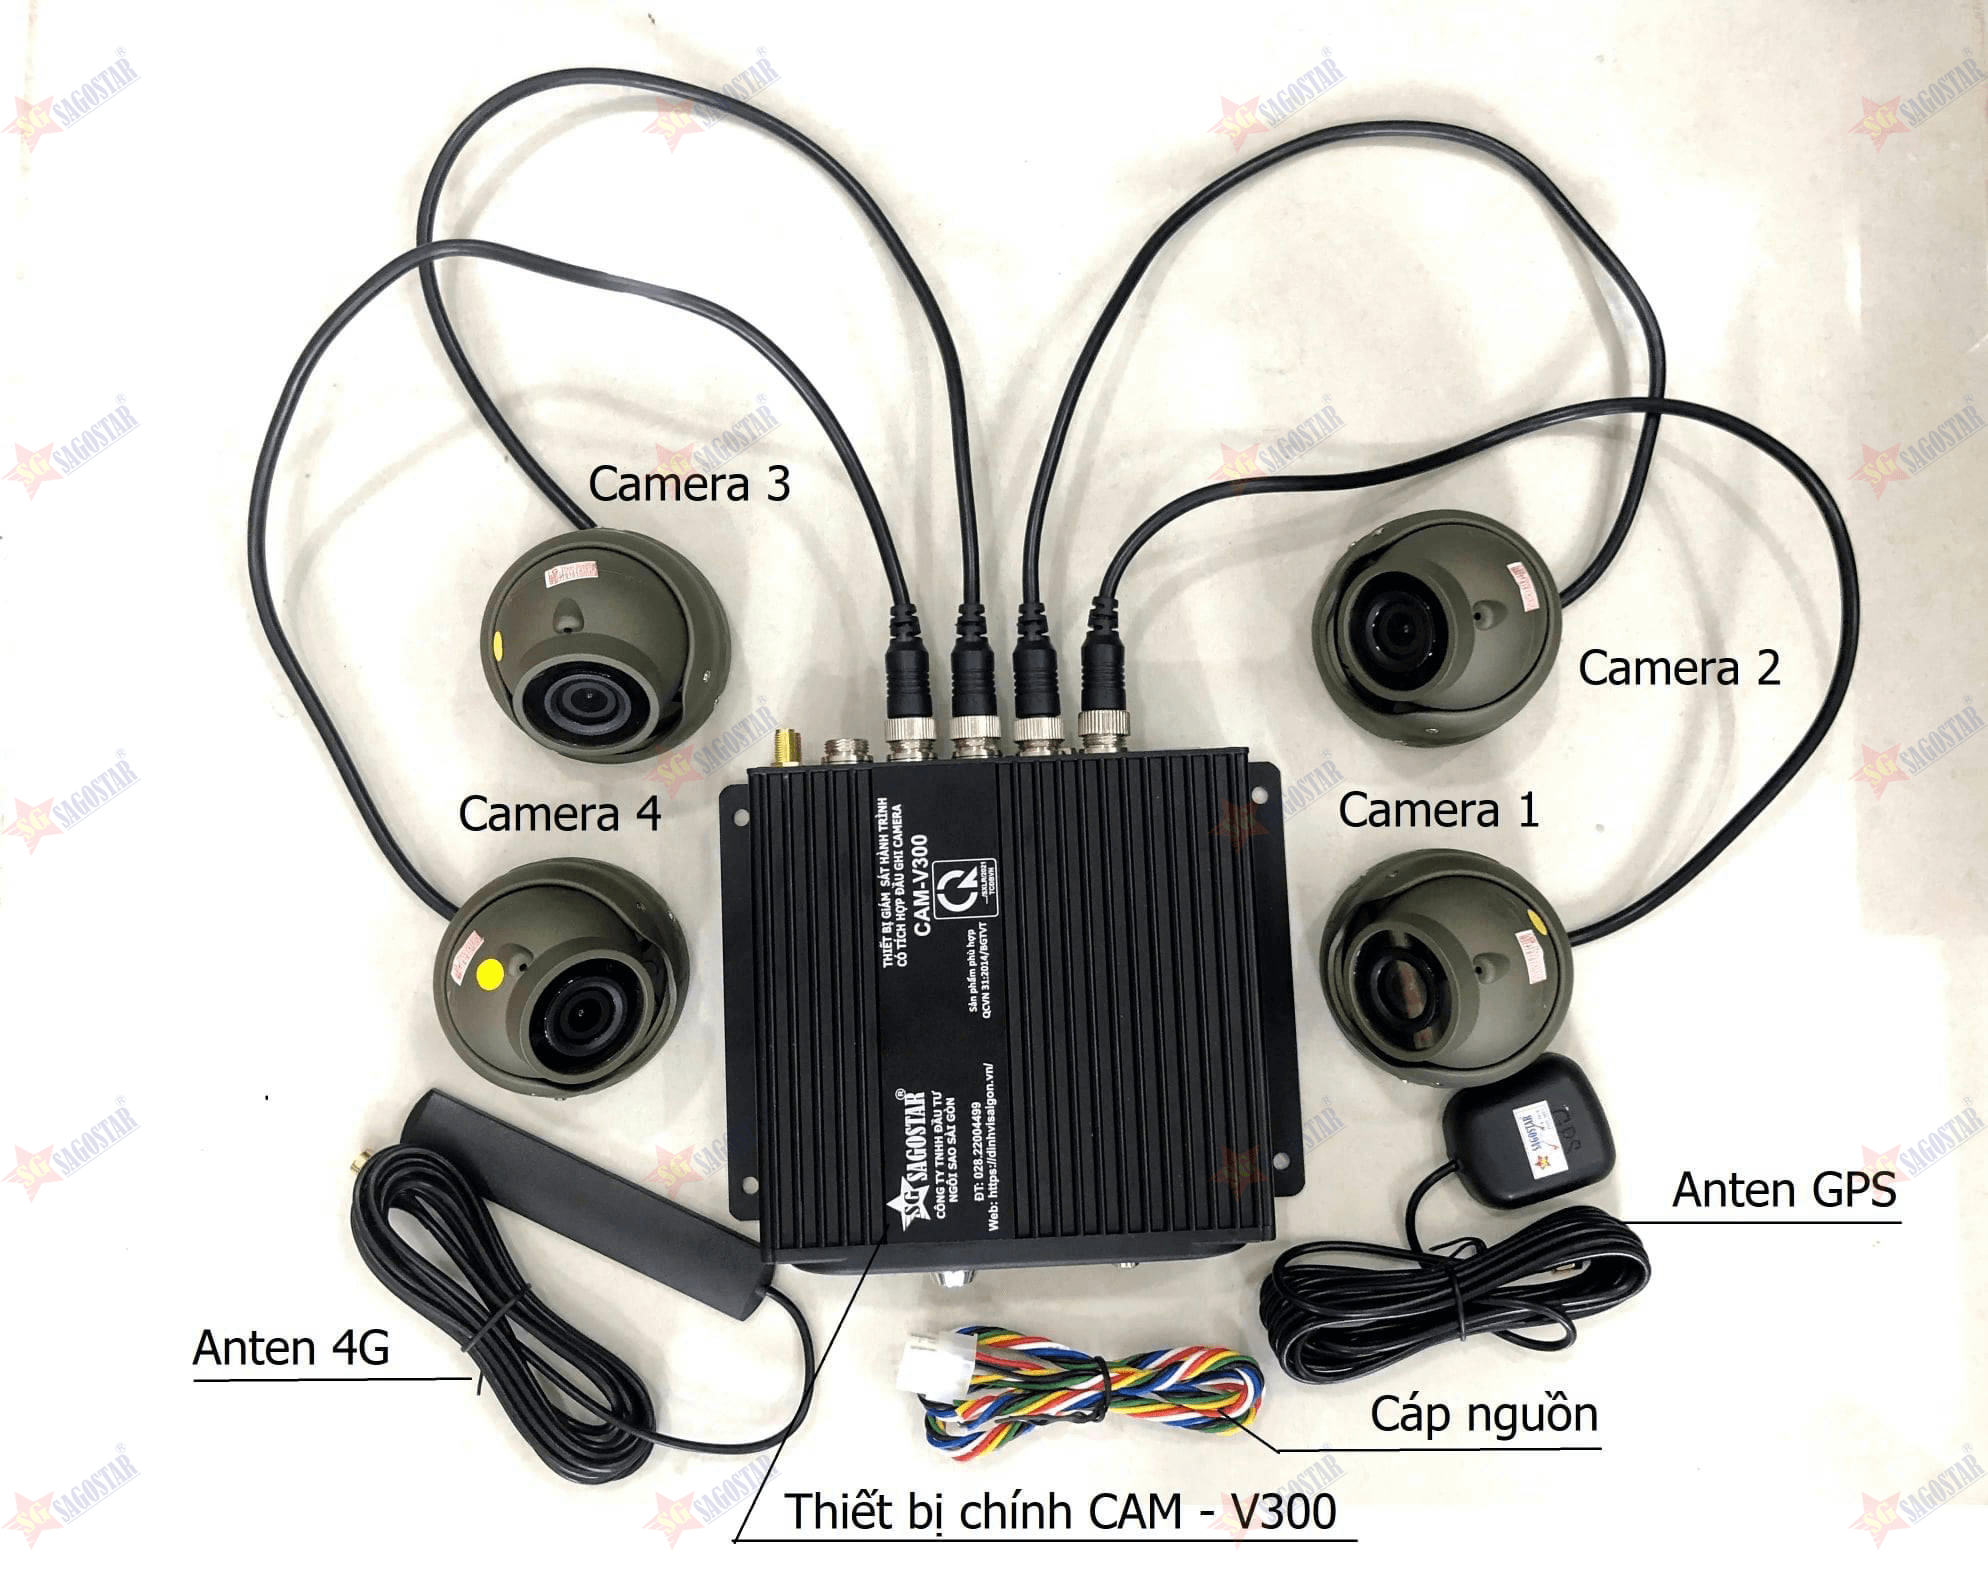 Các bộ phận chính của Camera hợp chuẩn xe tải V300